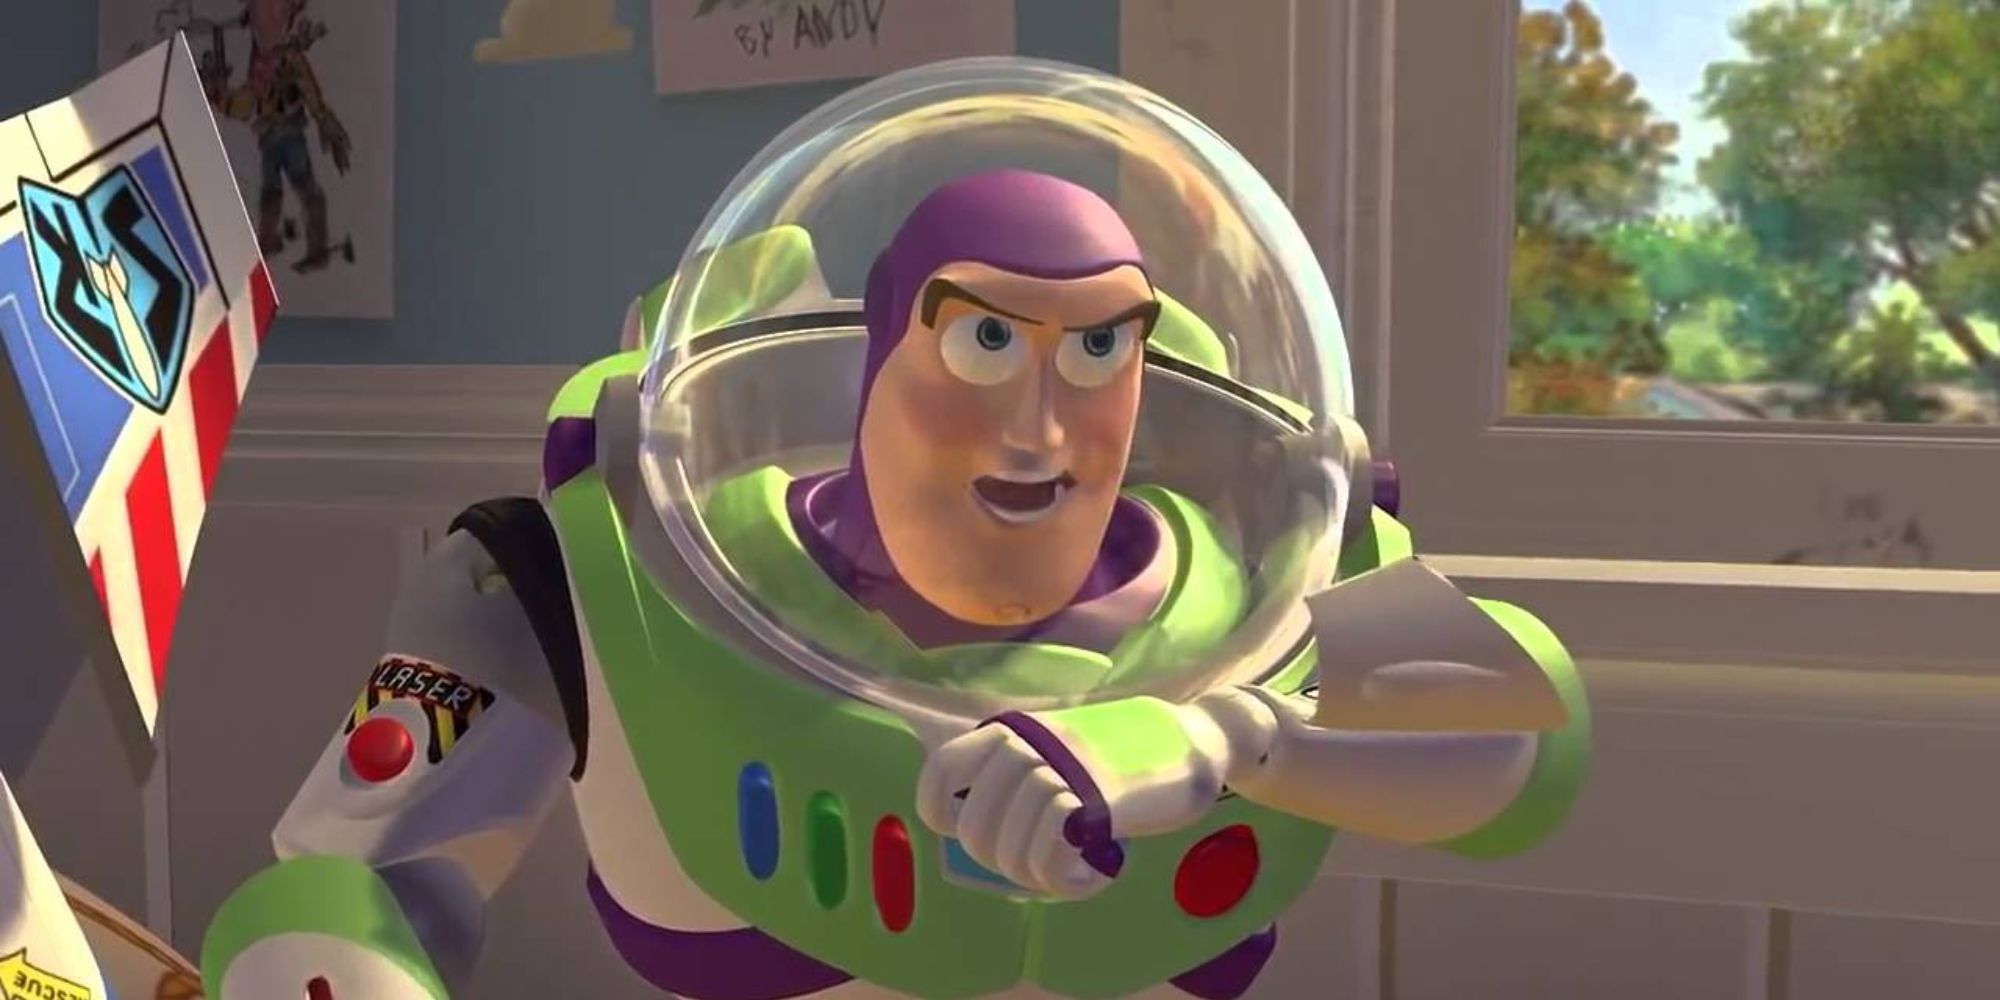 Tim Allen to return in Toy Story 5- Cinema express